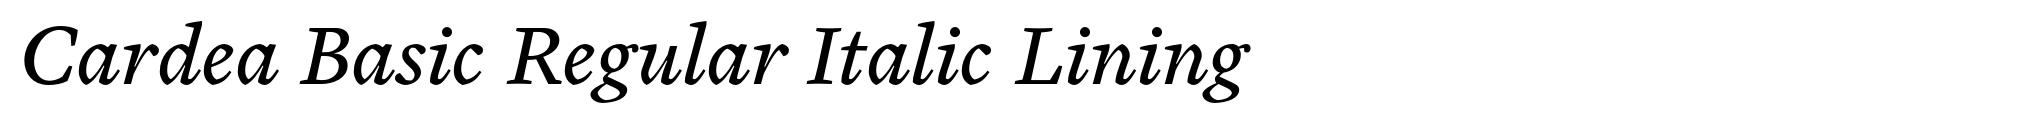 Cardea Basic Regular Italic Lining image